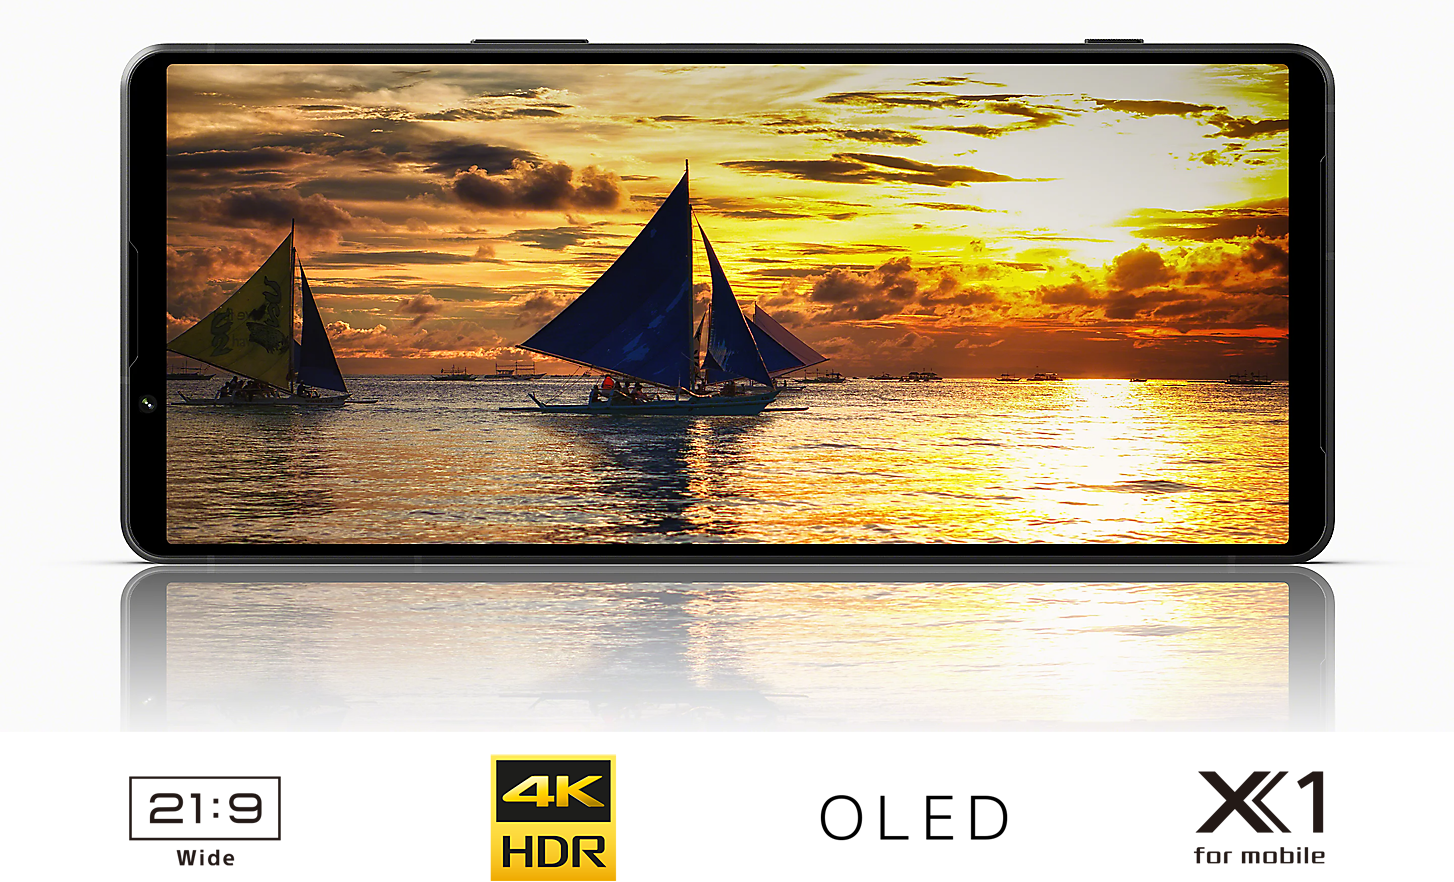 Smartphone Xperia 1 V zobrazující plachetnici při západu slunce a pod ním loga širokoúhlého displeje OLED s rozlišením 4K HDR s poměrem stran 21:9 a procesoru X1 pro mobilní zařízení